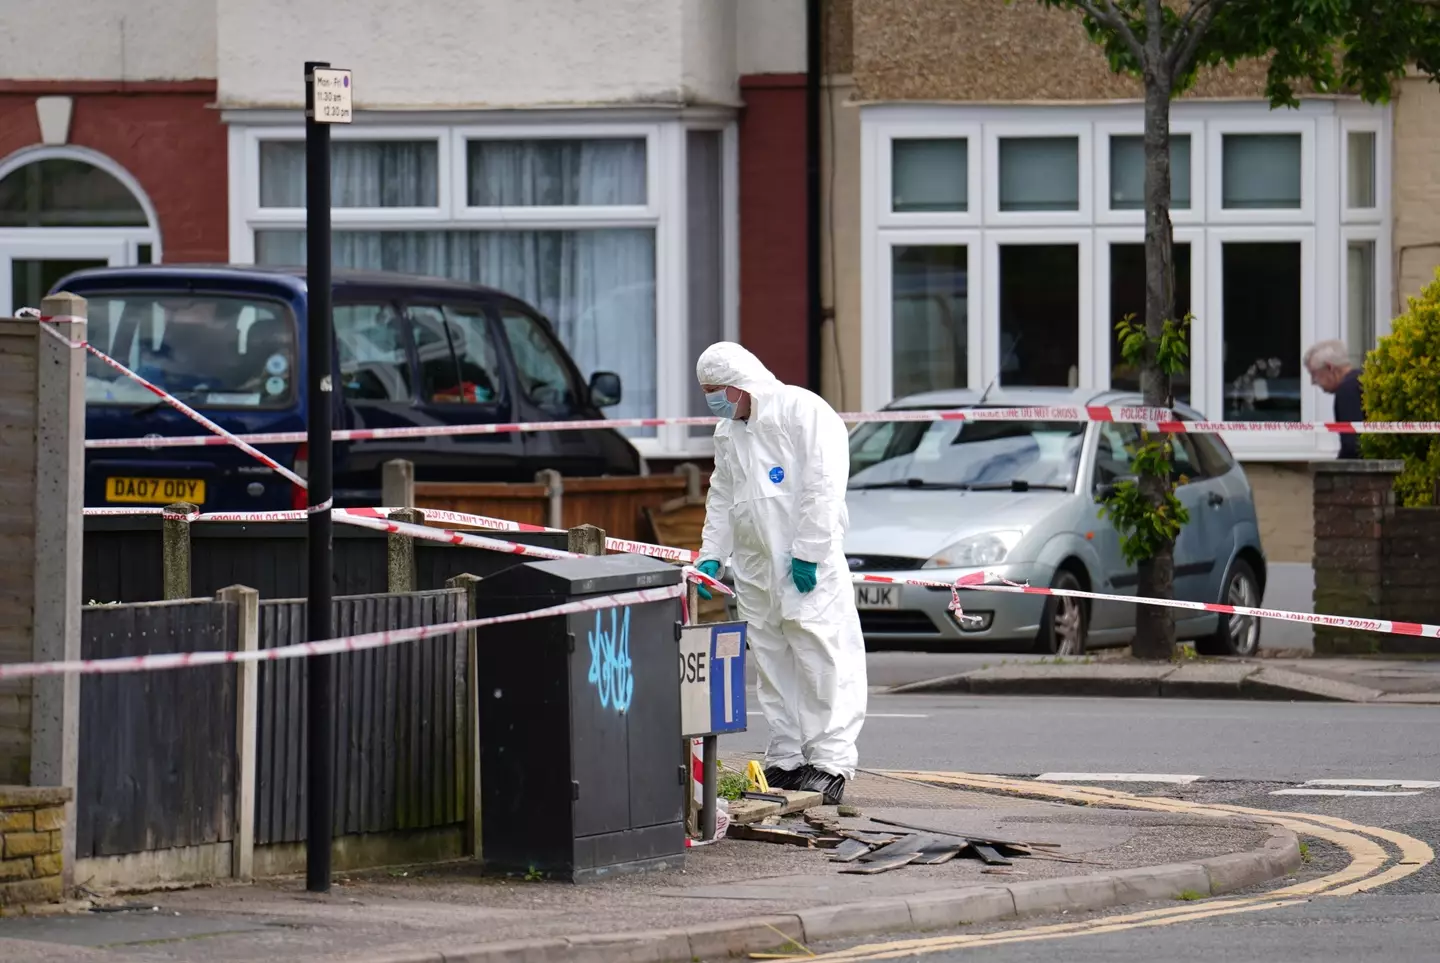 London Mayor Sadiq Khan has condemned the stabbings. (Jordan Pettitt/PA Wire)